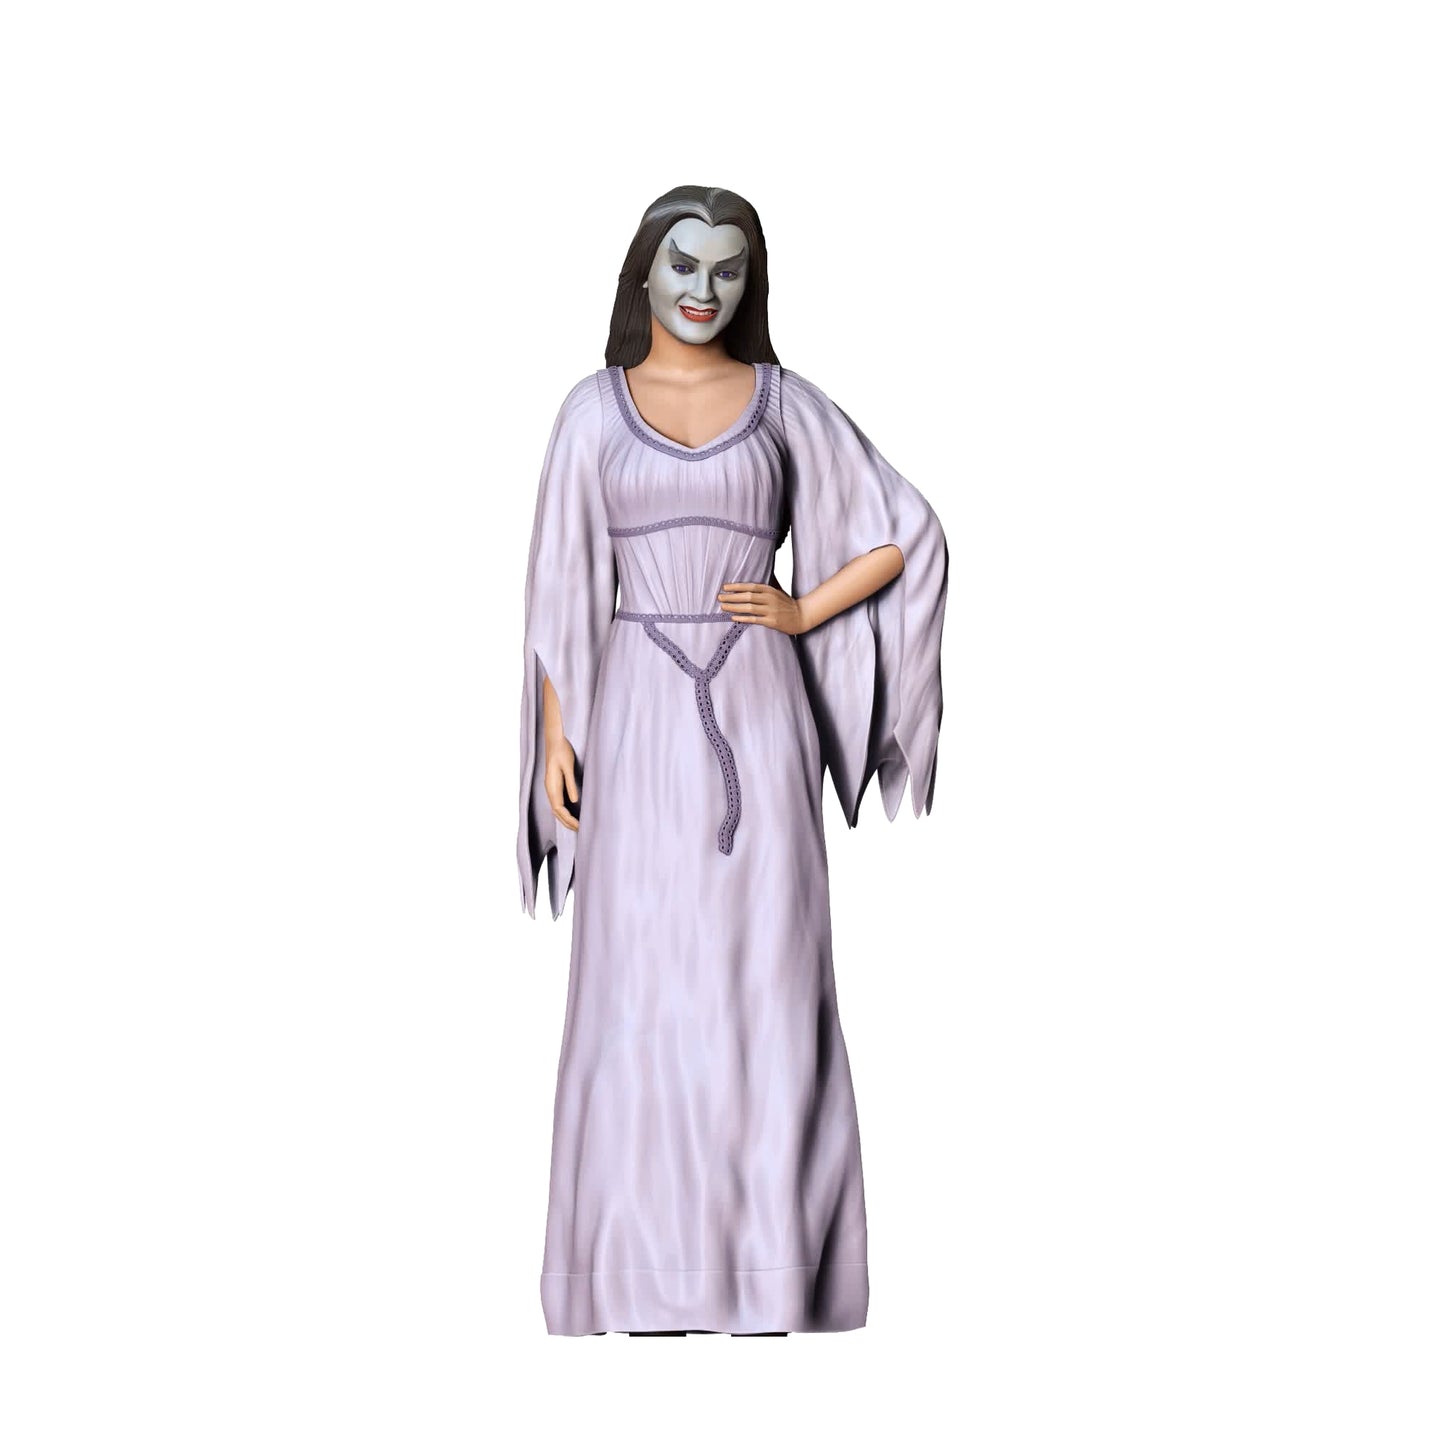 Produktfoto Diorama und Modellbau Miniatur Figur: Horror Mutter Lily: Eine ungewöhnliche Monster Familie